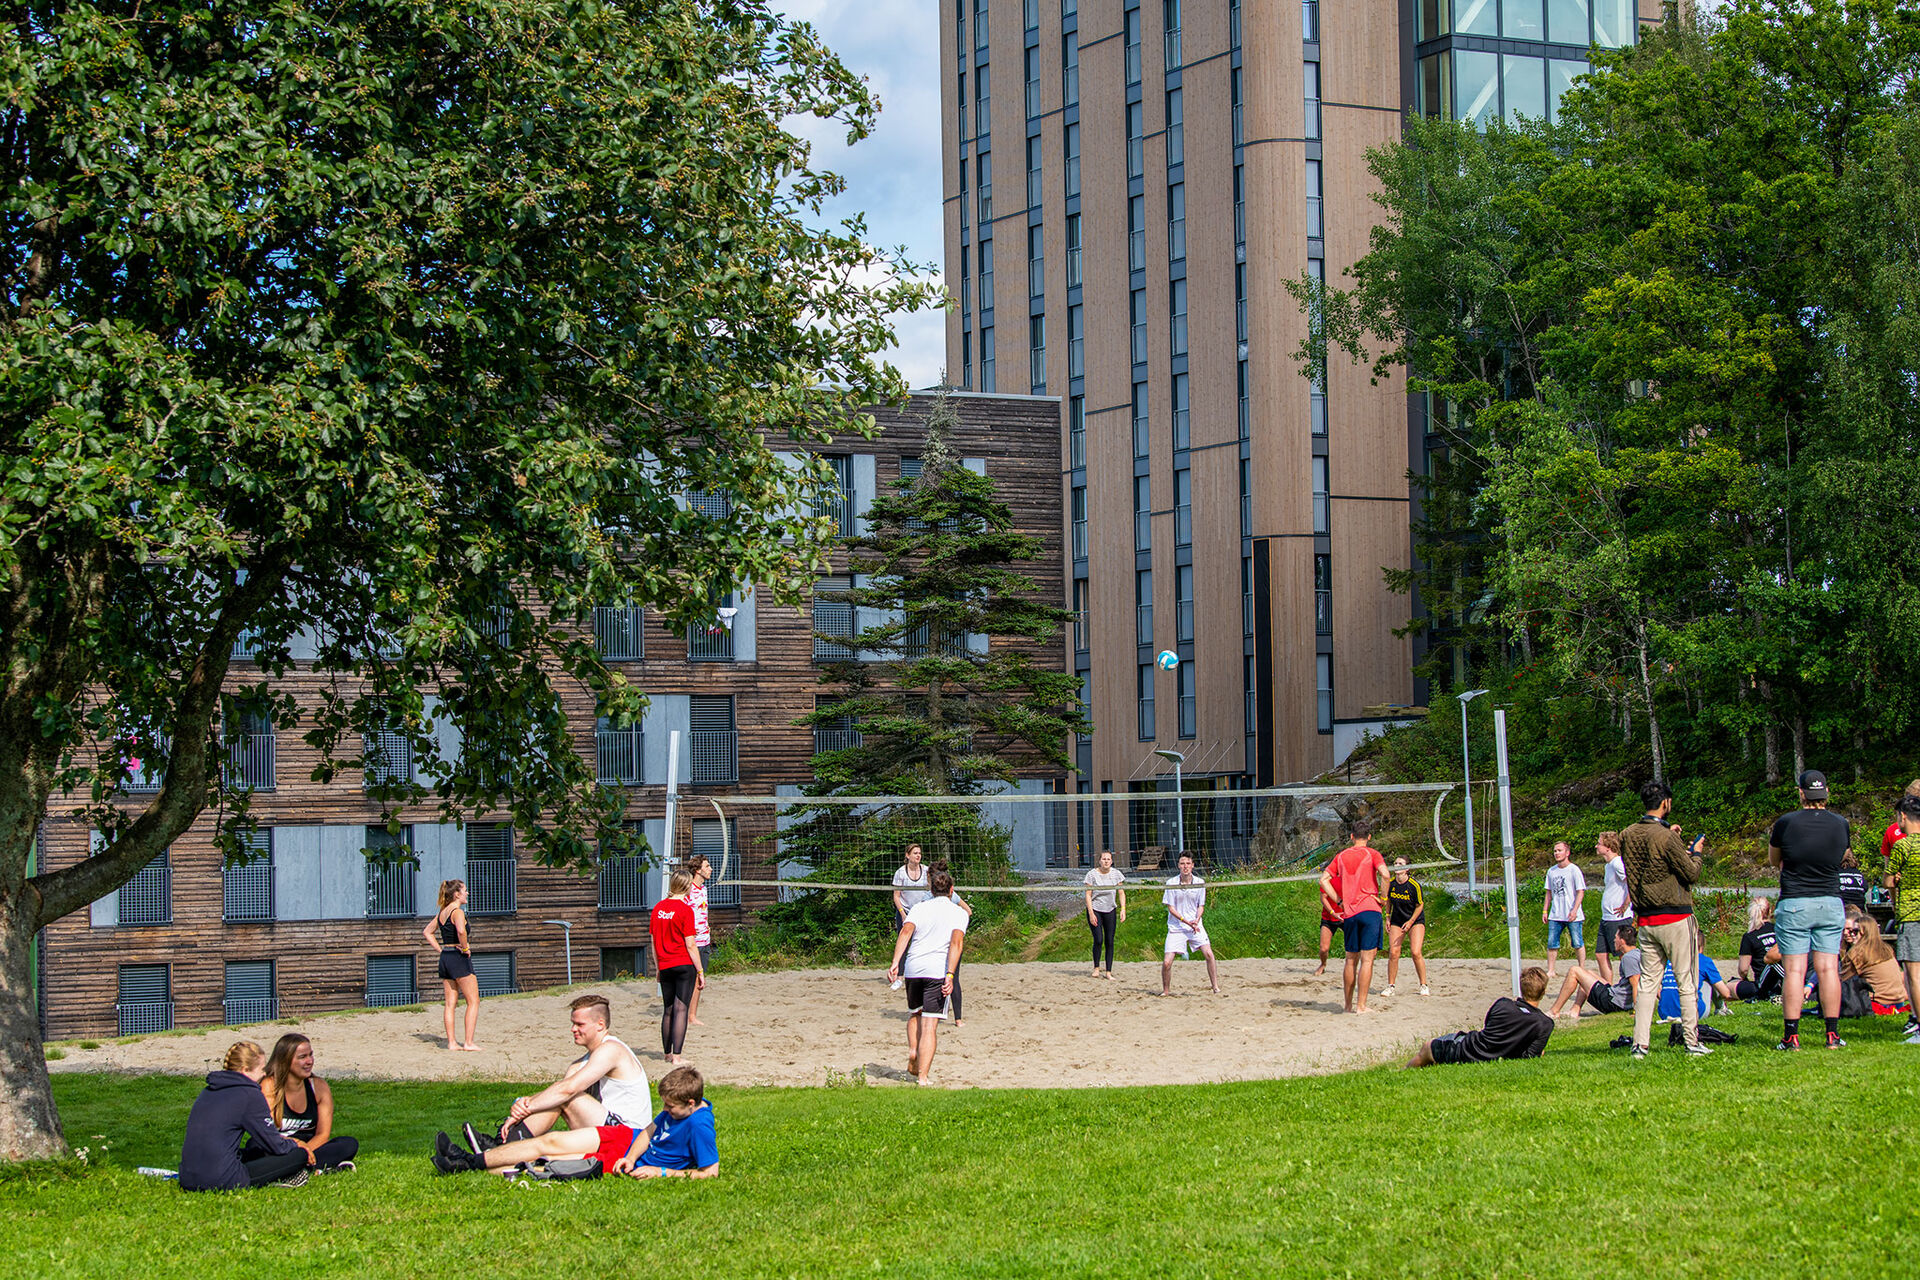 Dette bildet, som ble tatt på høgskolens campus i Halden ved studiestart, viser studenter som deltar på fadderleker - deriblant sandvolleyball.